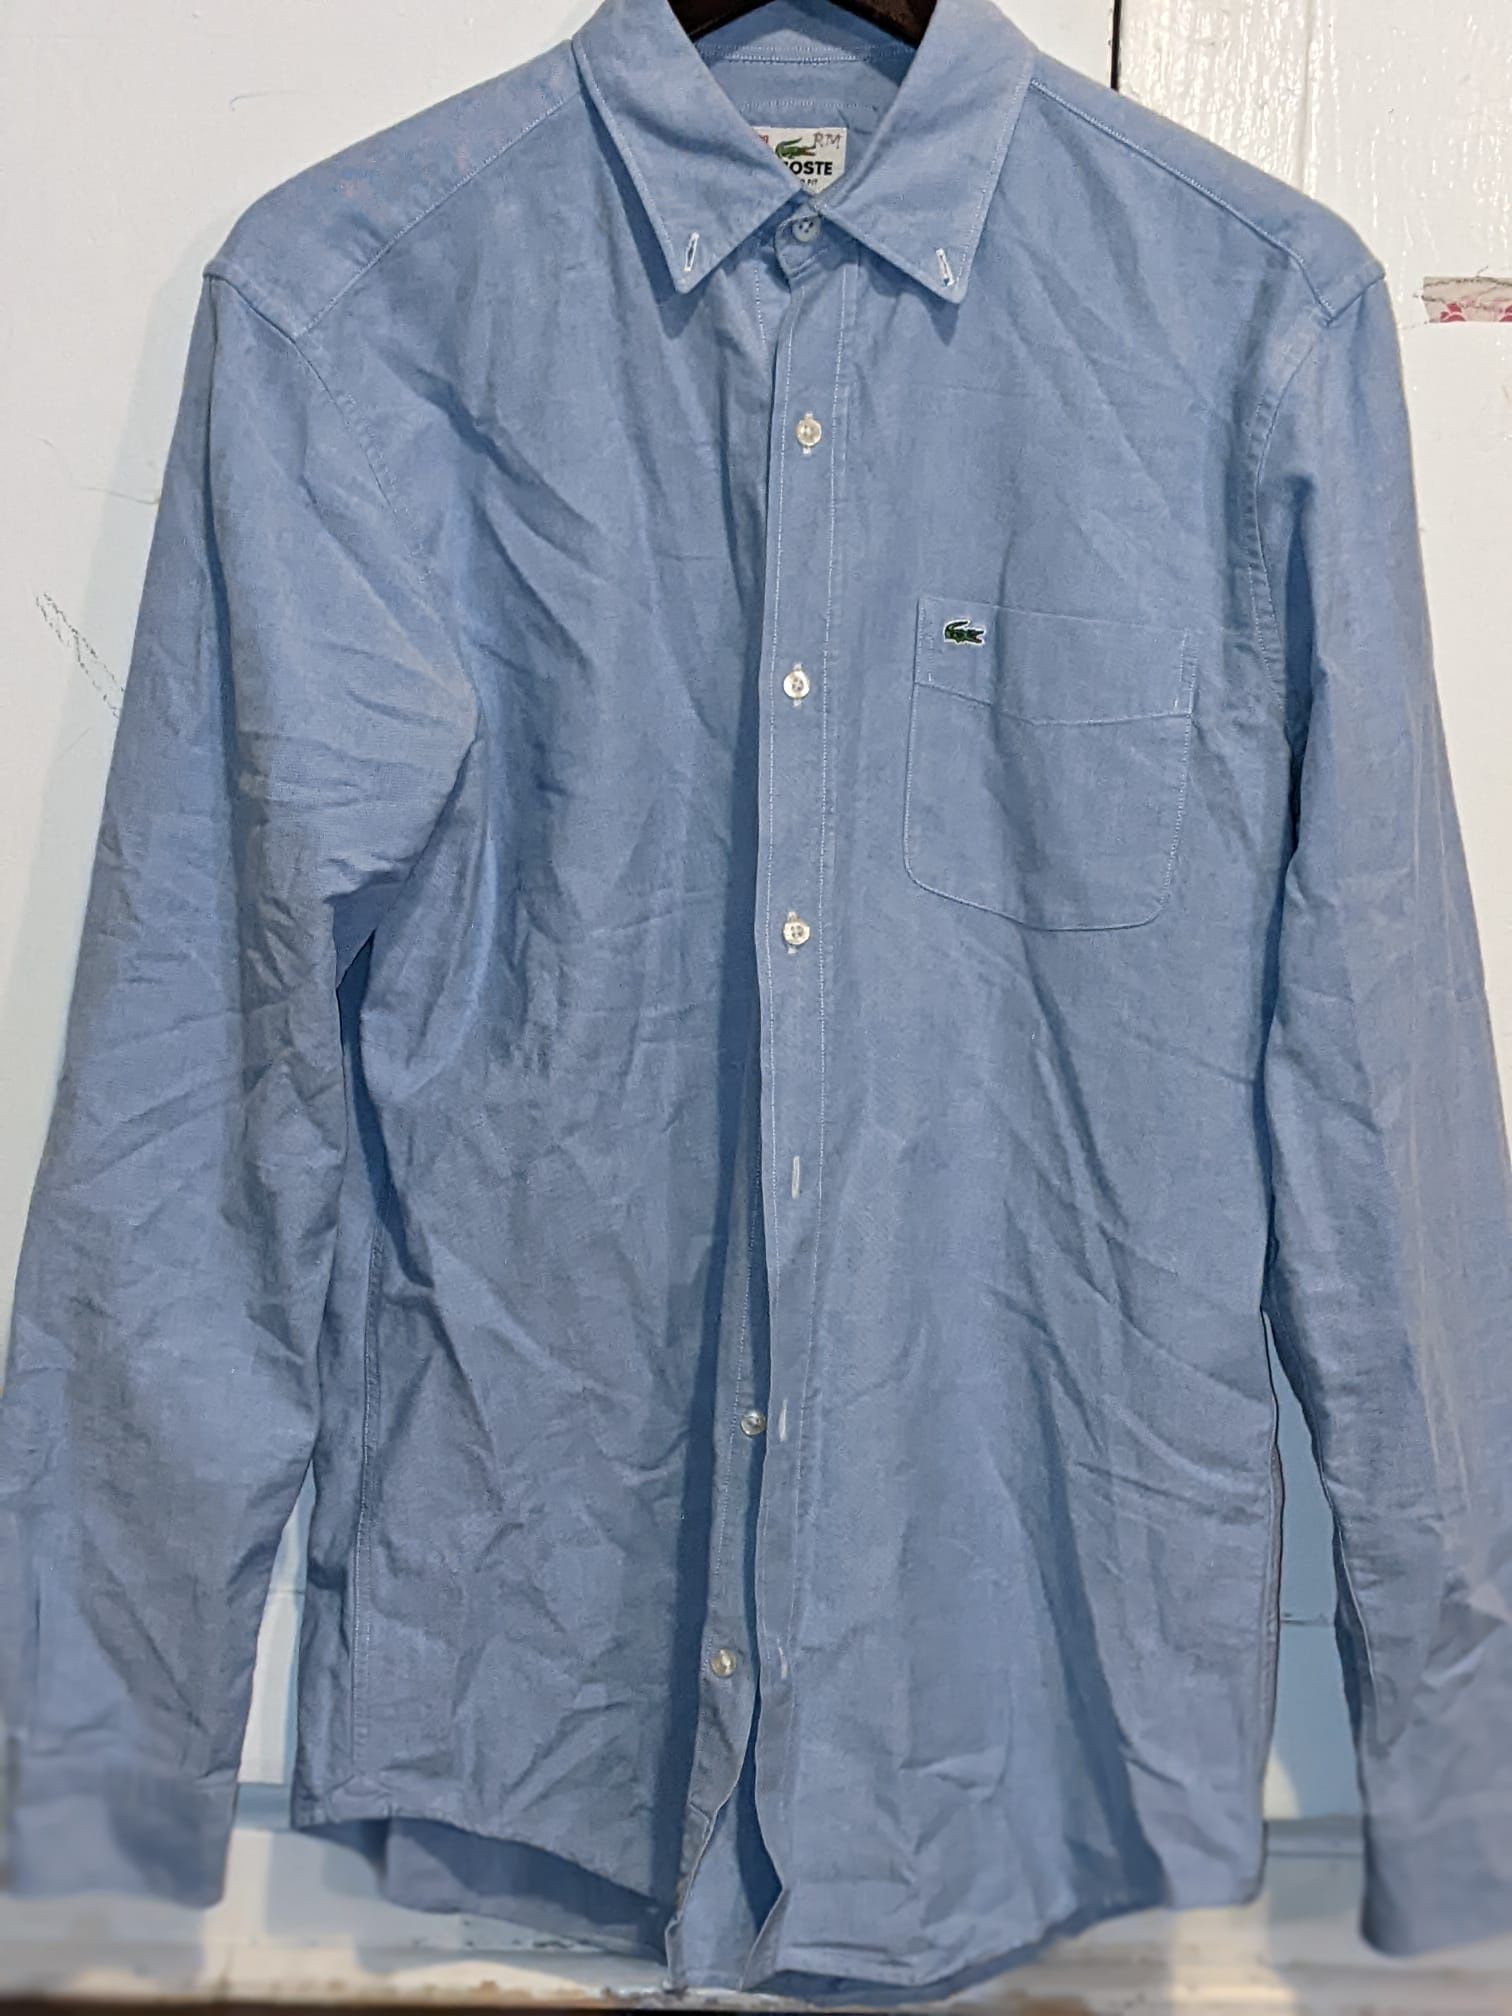 Lacoste Men’s Dress Shirt Blue Size 38 100% Cotton